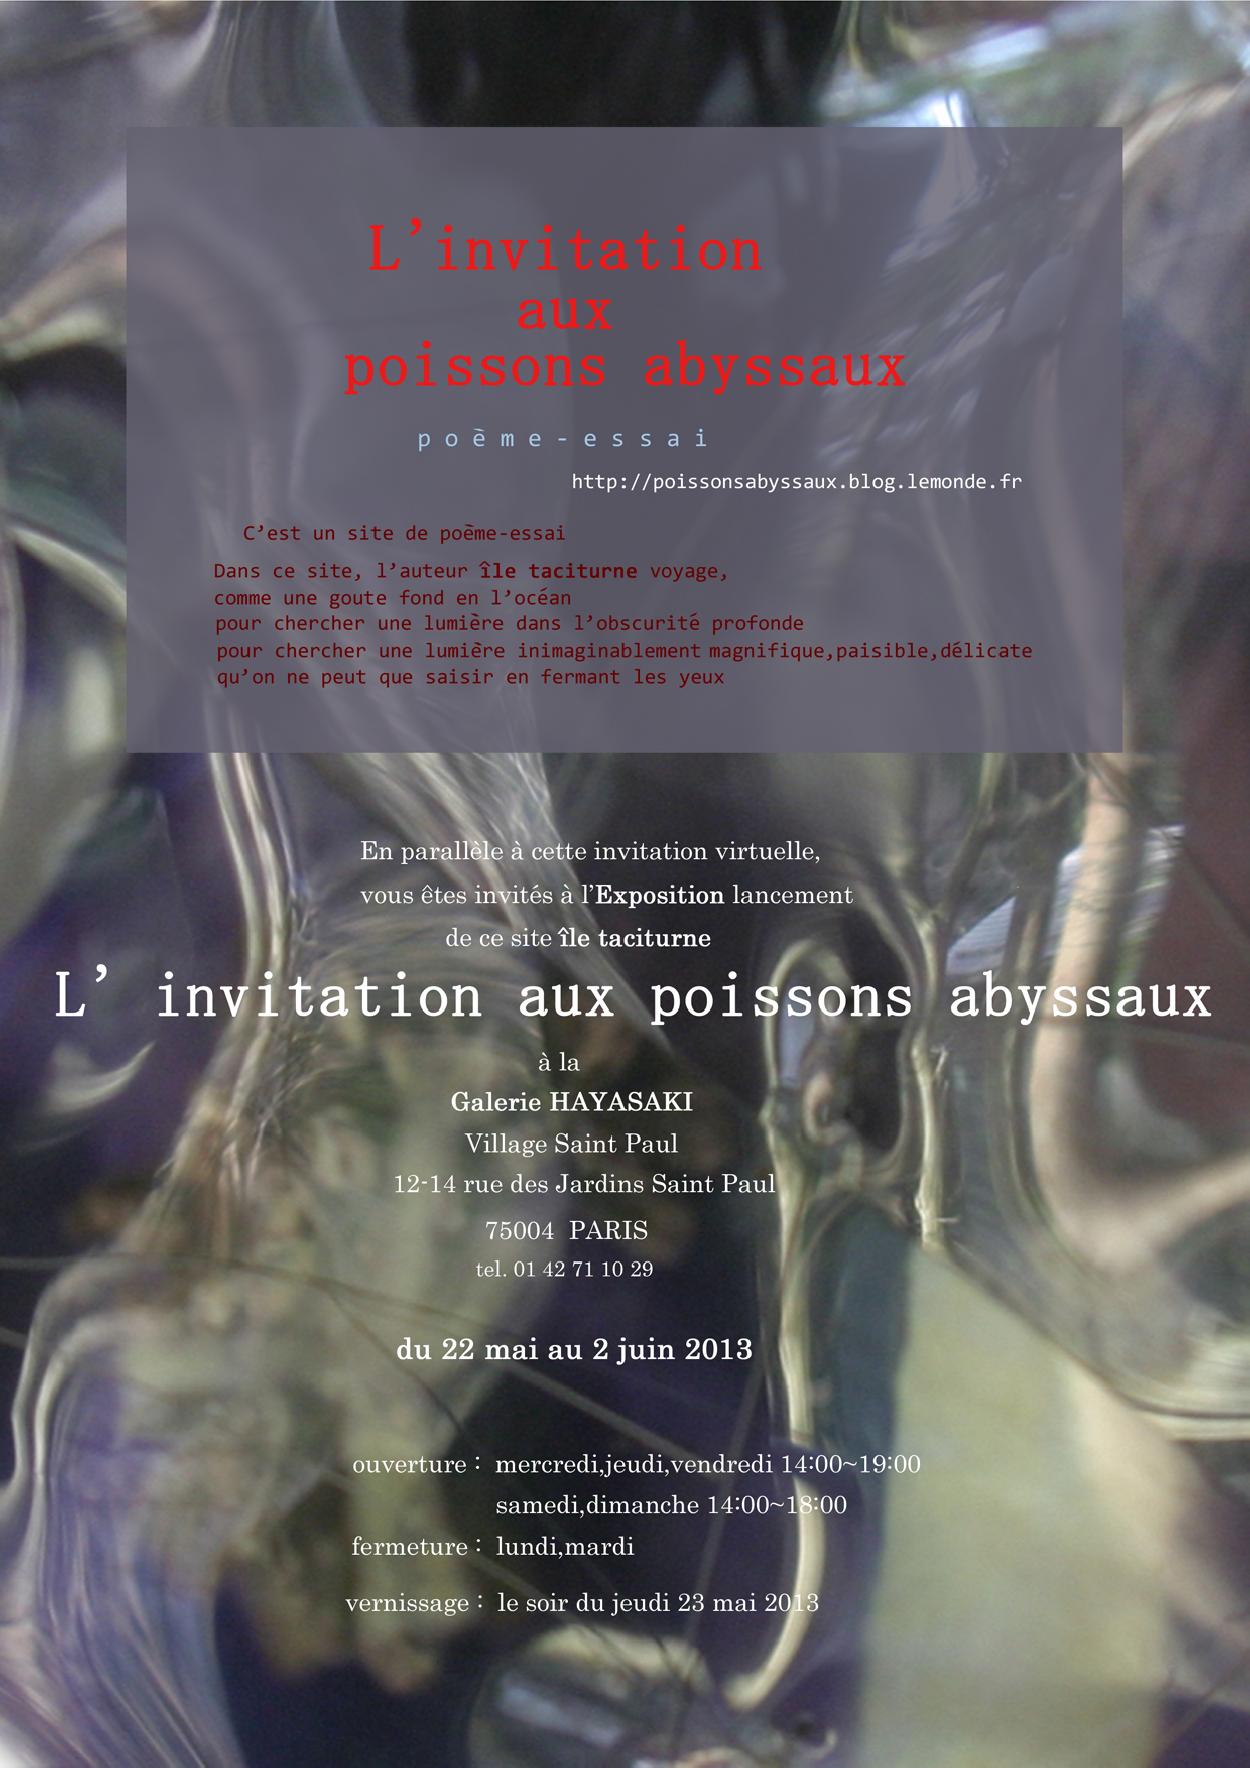 île taciturne, L'invitation aux poissons abyssaux, 2013년 5월22일  - 2013년 6월2일 